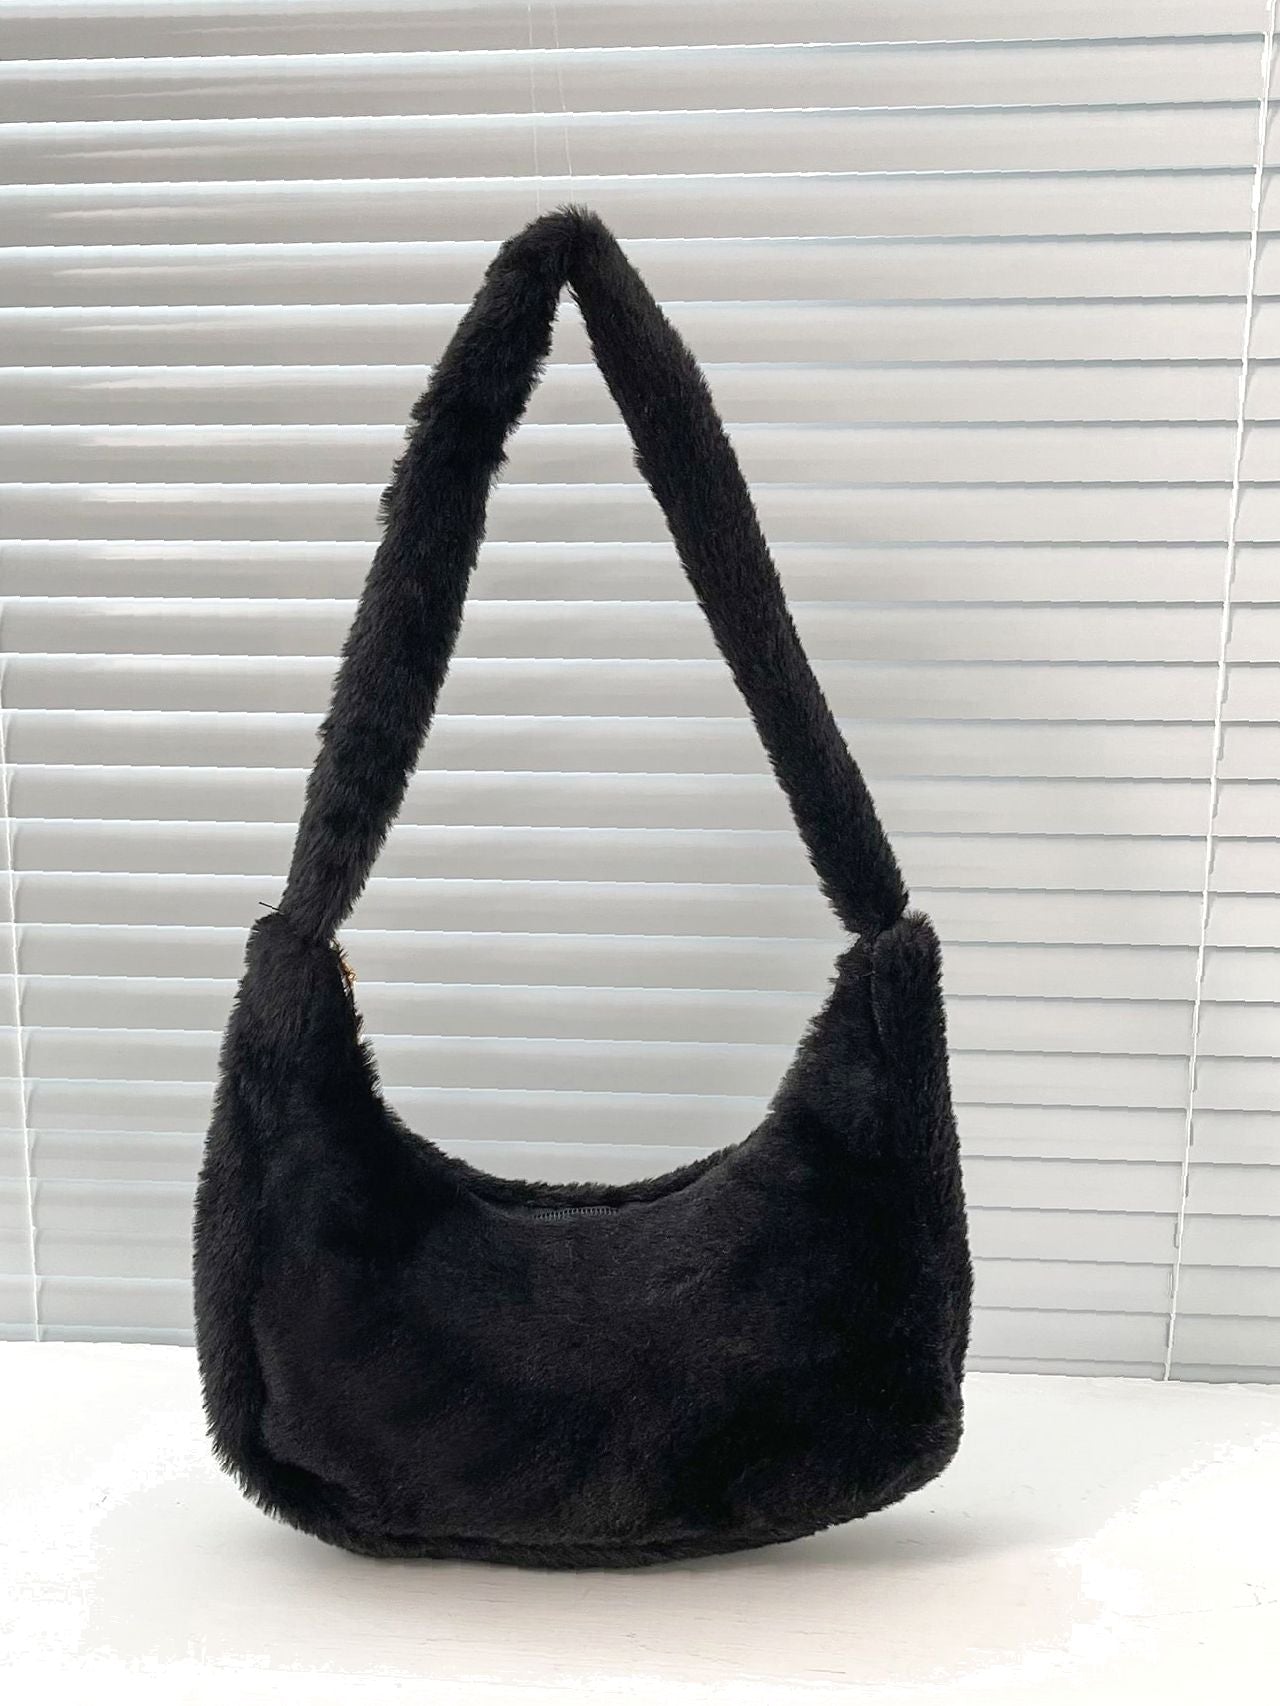 Bird in Bag - Minimalist Fuzzy Baguette Bag  - Women Shoulder Bags